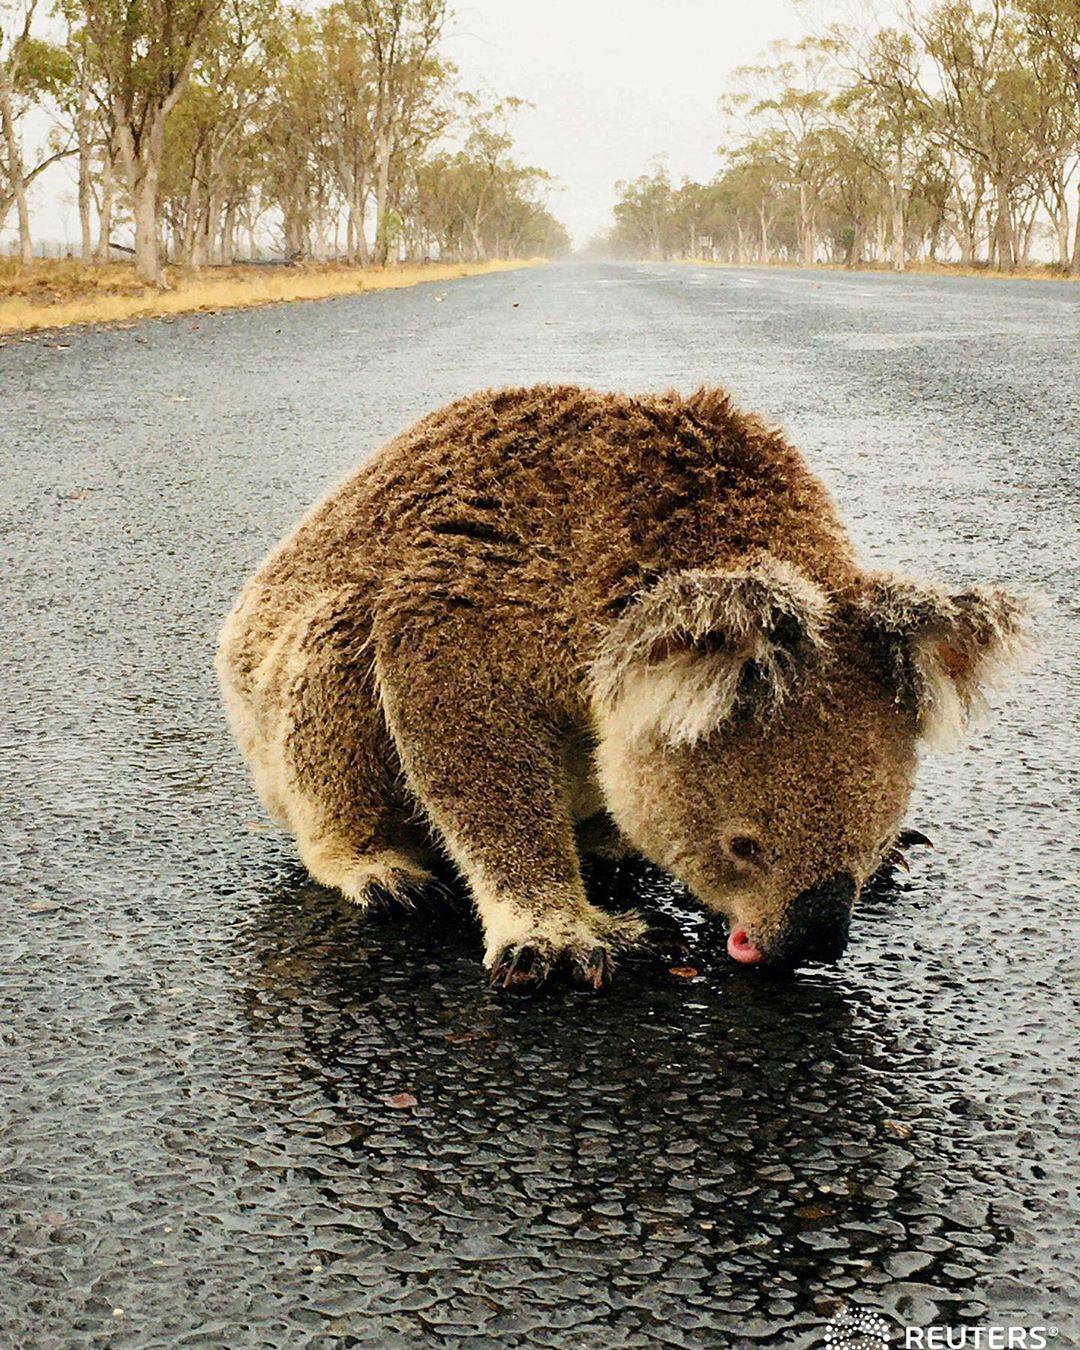 Αποτέλεσμα εικόνας για Αυστραλία: Κοάλα γλύφει τον βρεγμένο δρόμο μετά από βροχή για να ξεδιψάσει